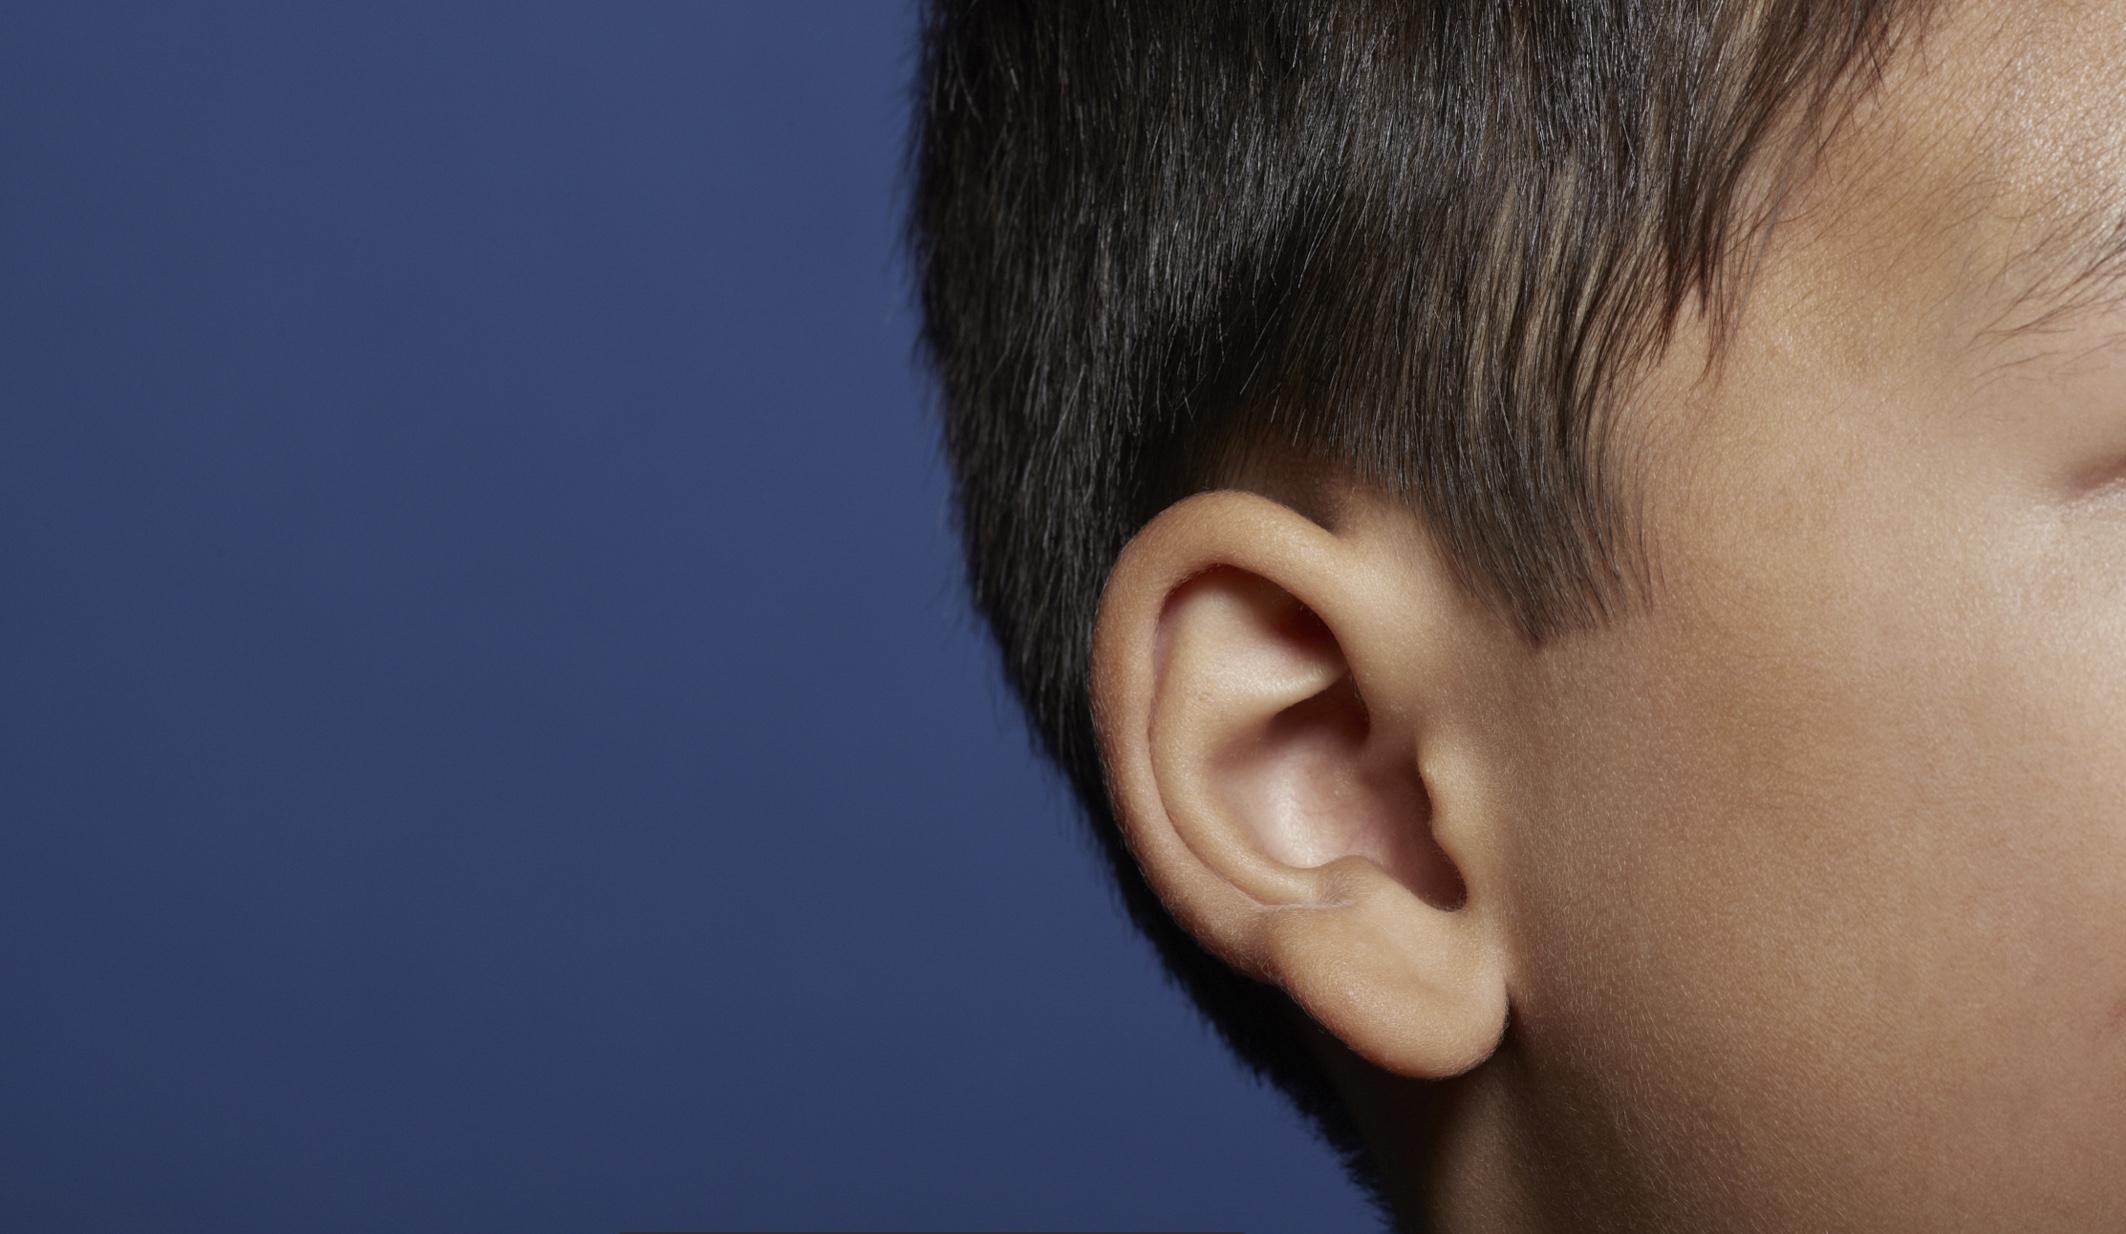 【案例分析】35岁男性患者做耳再造手术矫正小耳畸形 - 哔哩哔哩